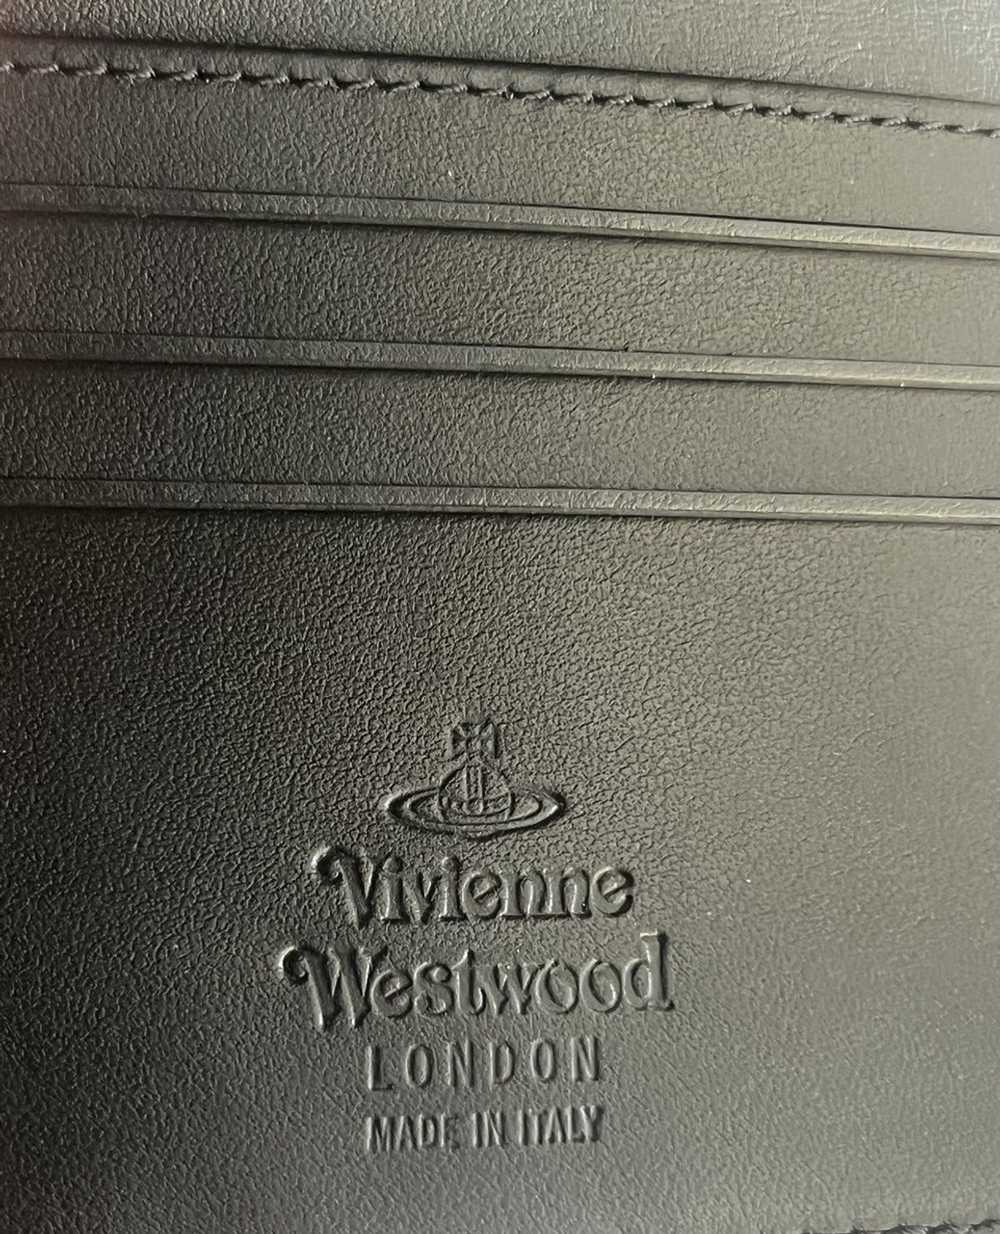 Vivienne Westwood Vivienne Westwood wallet - image 4